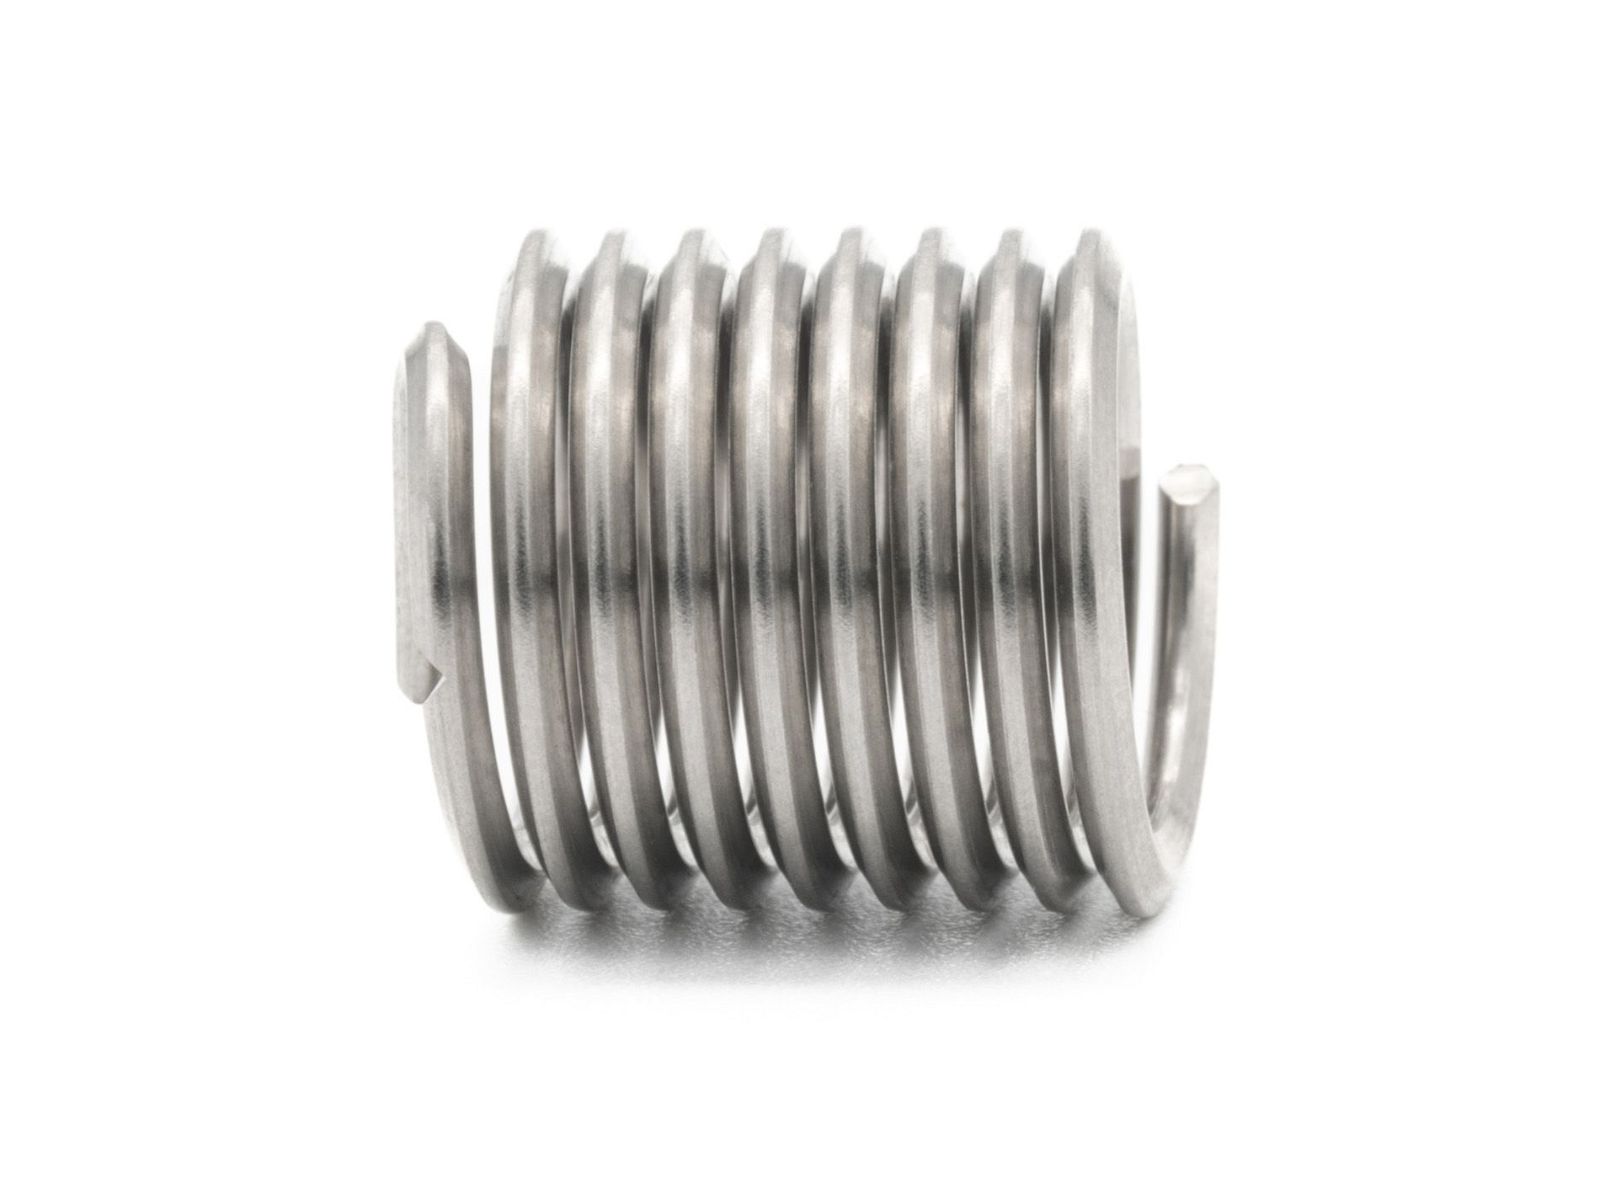 BaerCoil Wire Thread Inserts UNF 1/4 x 28 - 1.5 D (9.53 mm) 100 pcs.